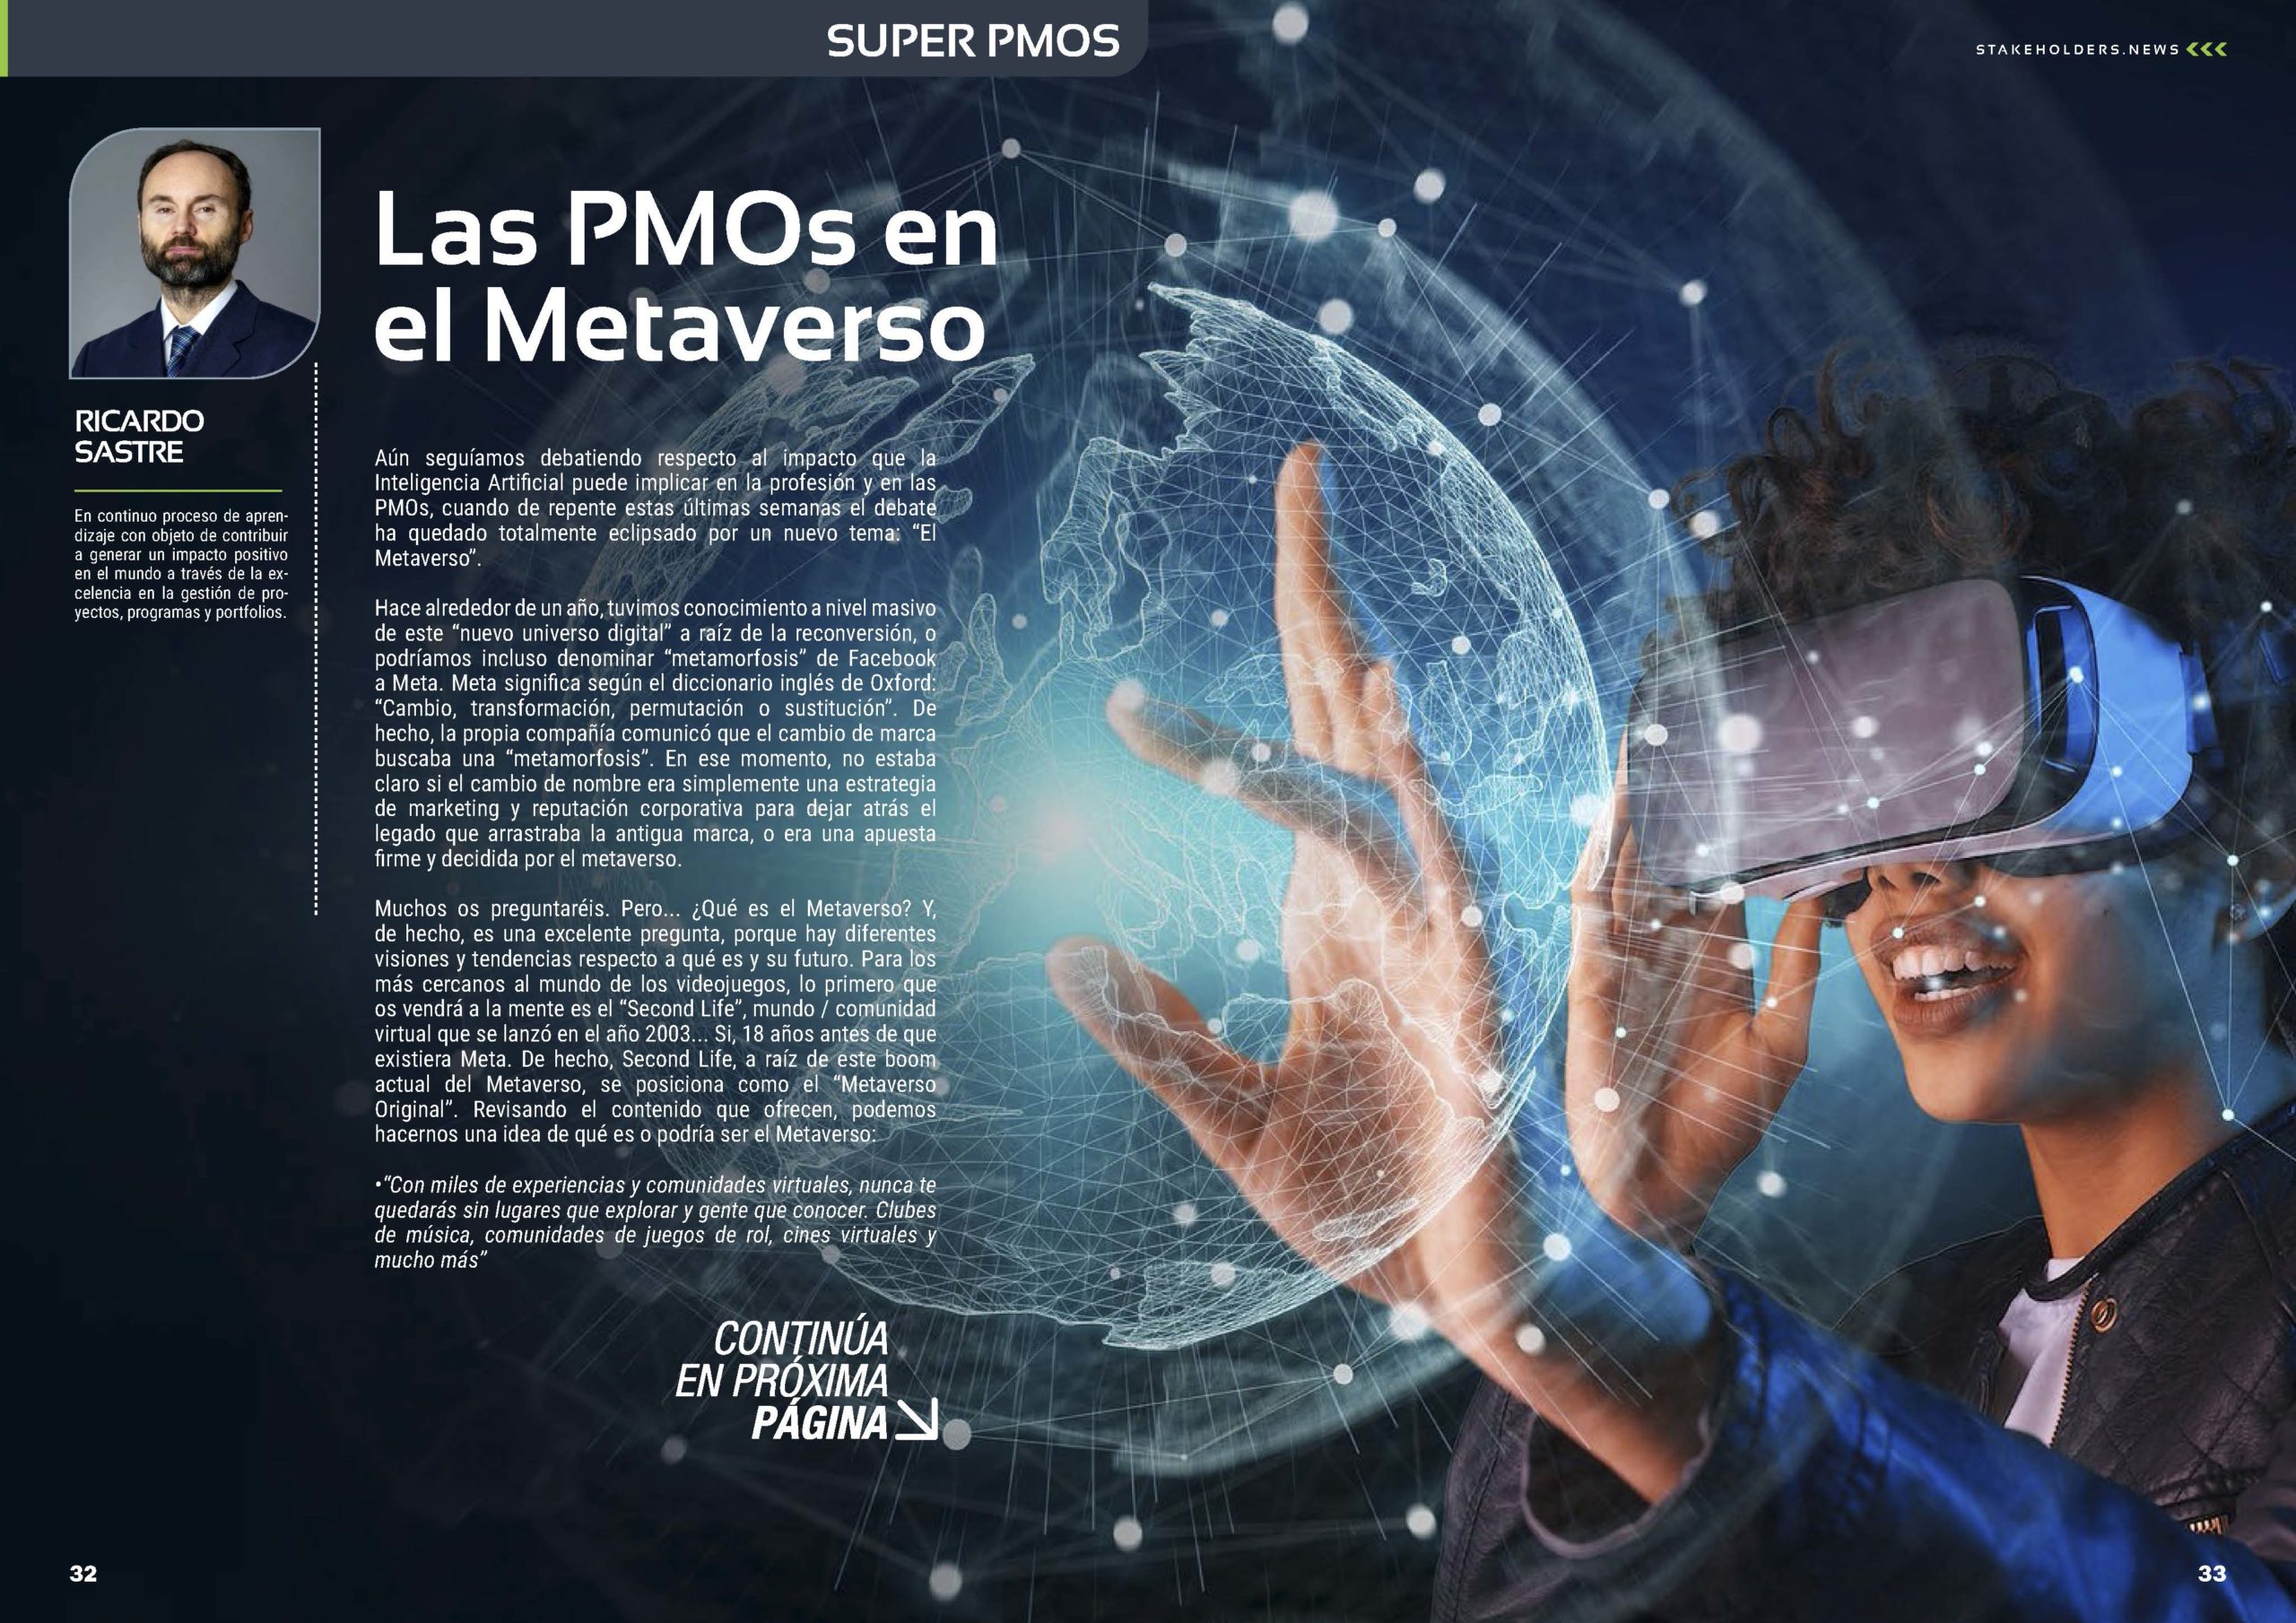 Artículo "Las PMOs en el Metaverso" de Ricardo Sastre en la Revista Stakeholders.news